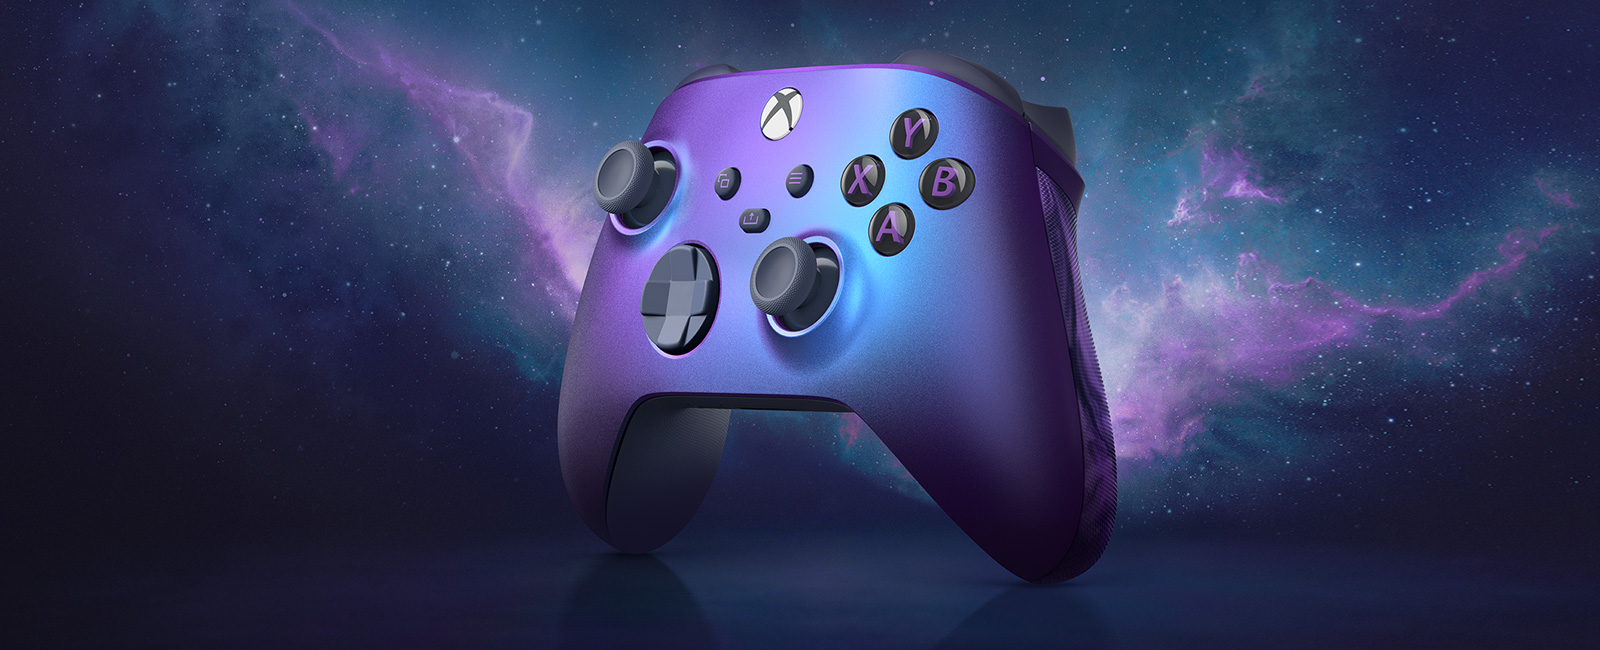 极光紫特别版Xbox无线控制器